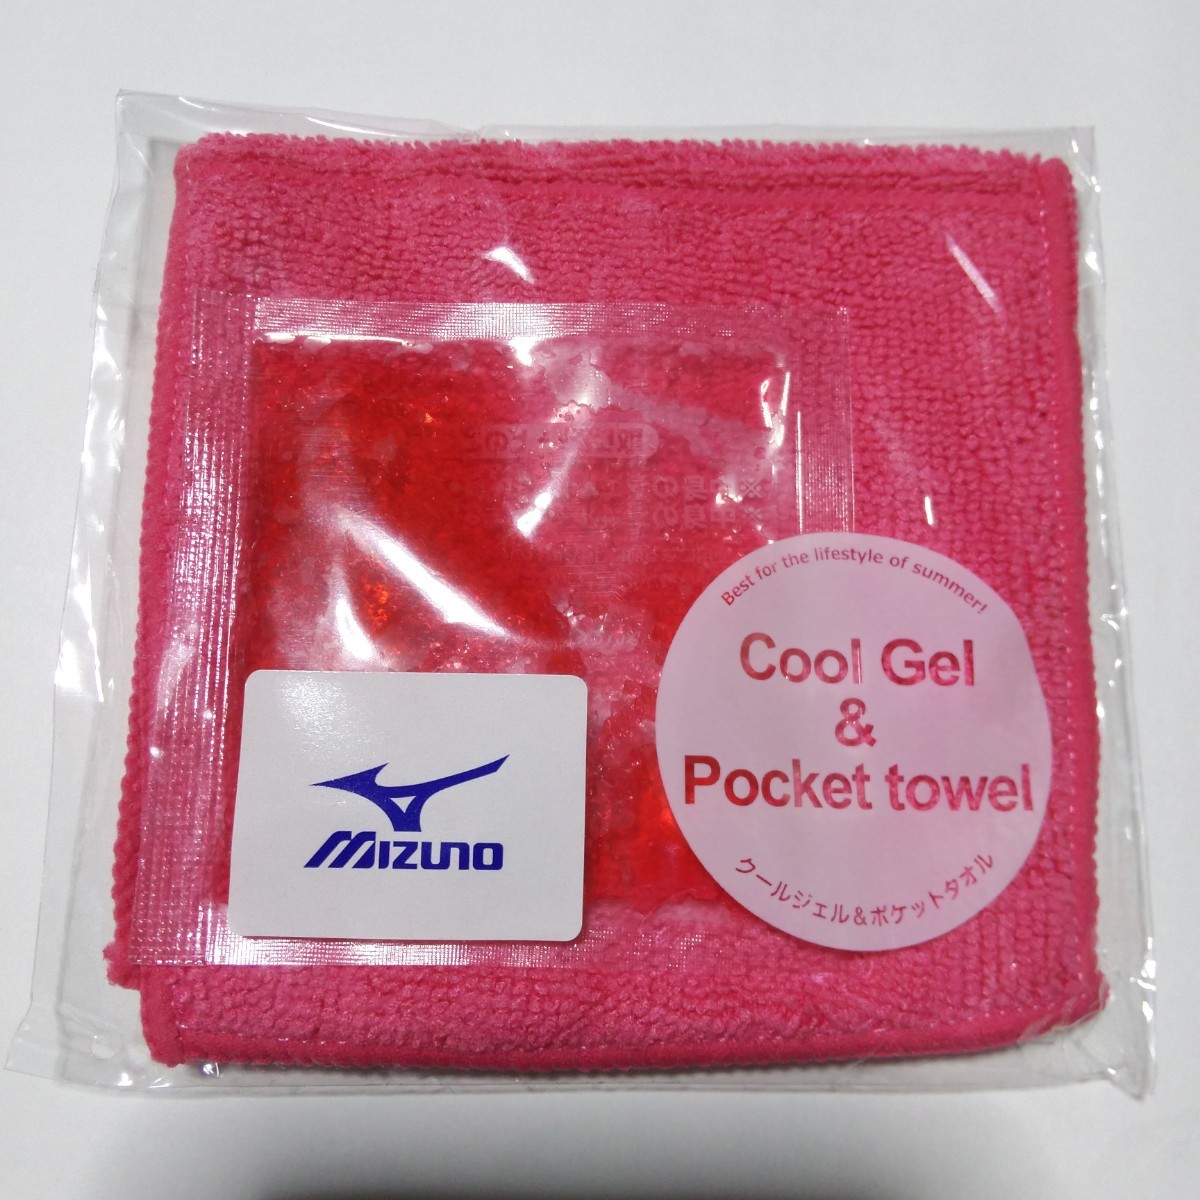 Mizuno Mizuno прохладный гель & карман полотенце цвет 4 шт. комплект . средний . меры новый товар уличный отдых спорт прохладный down охлаждающий выгода 